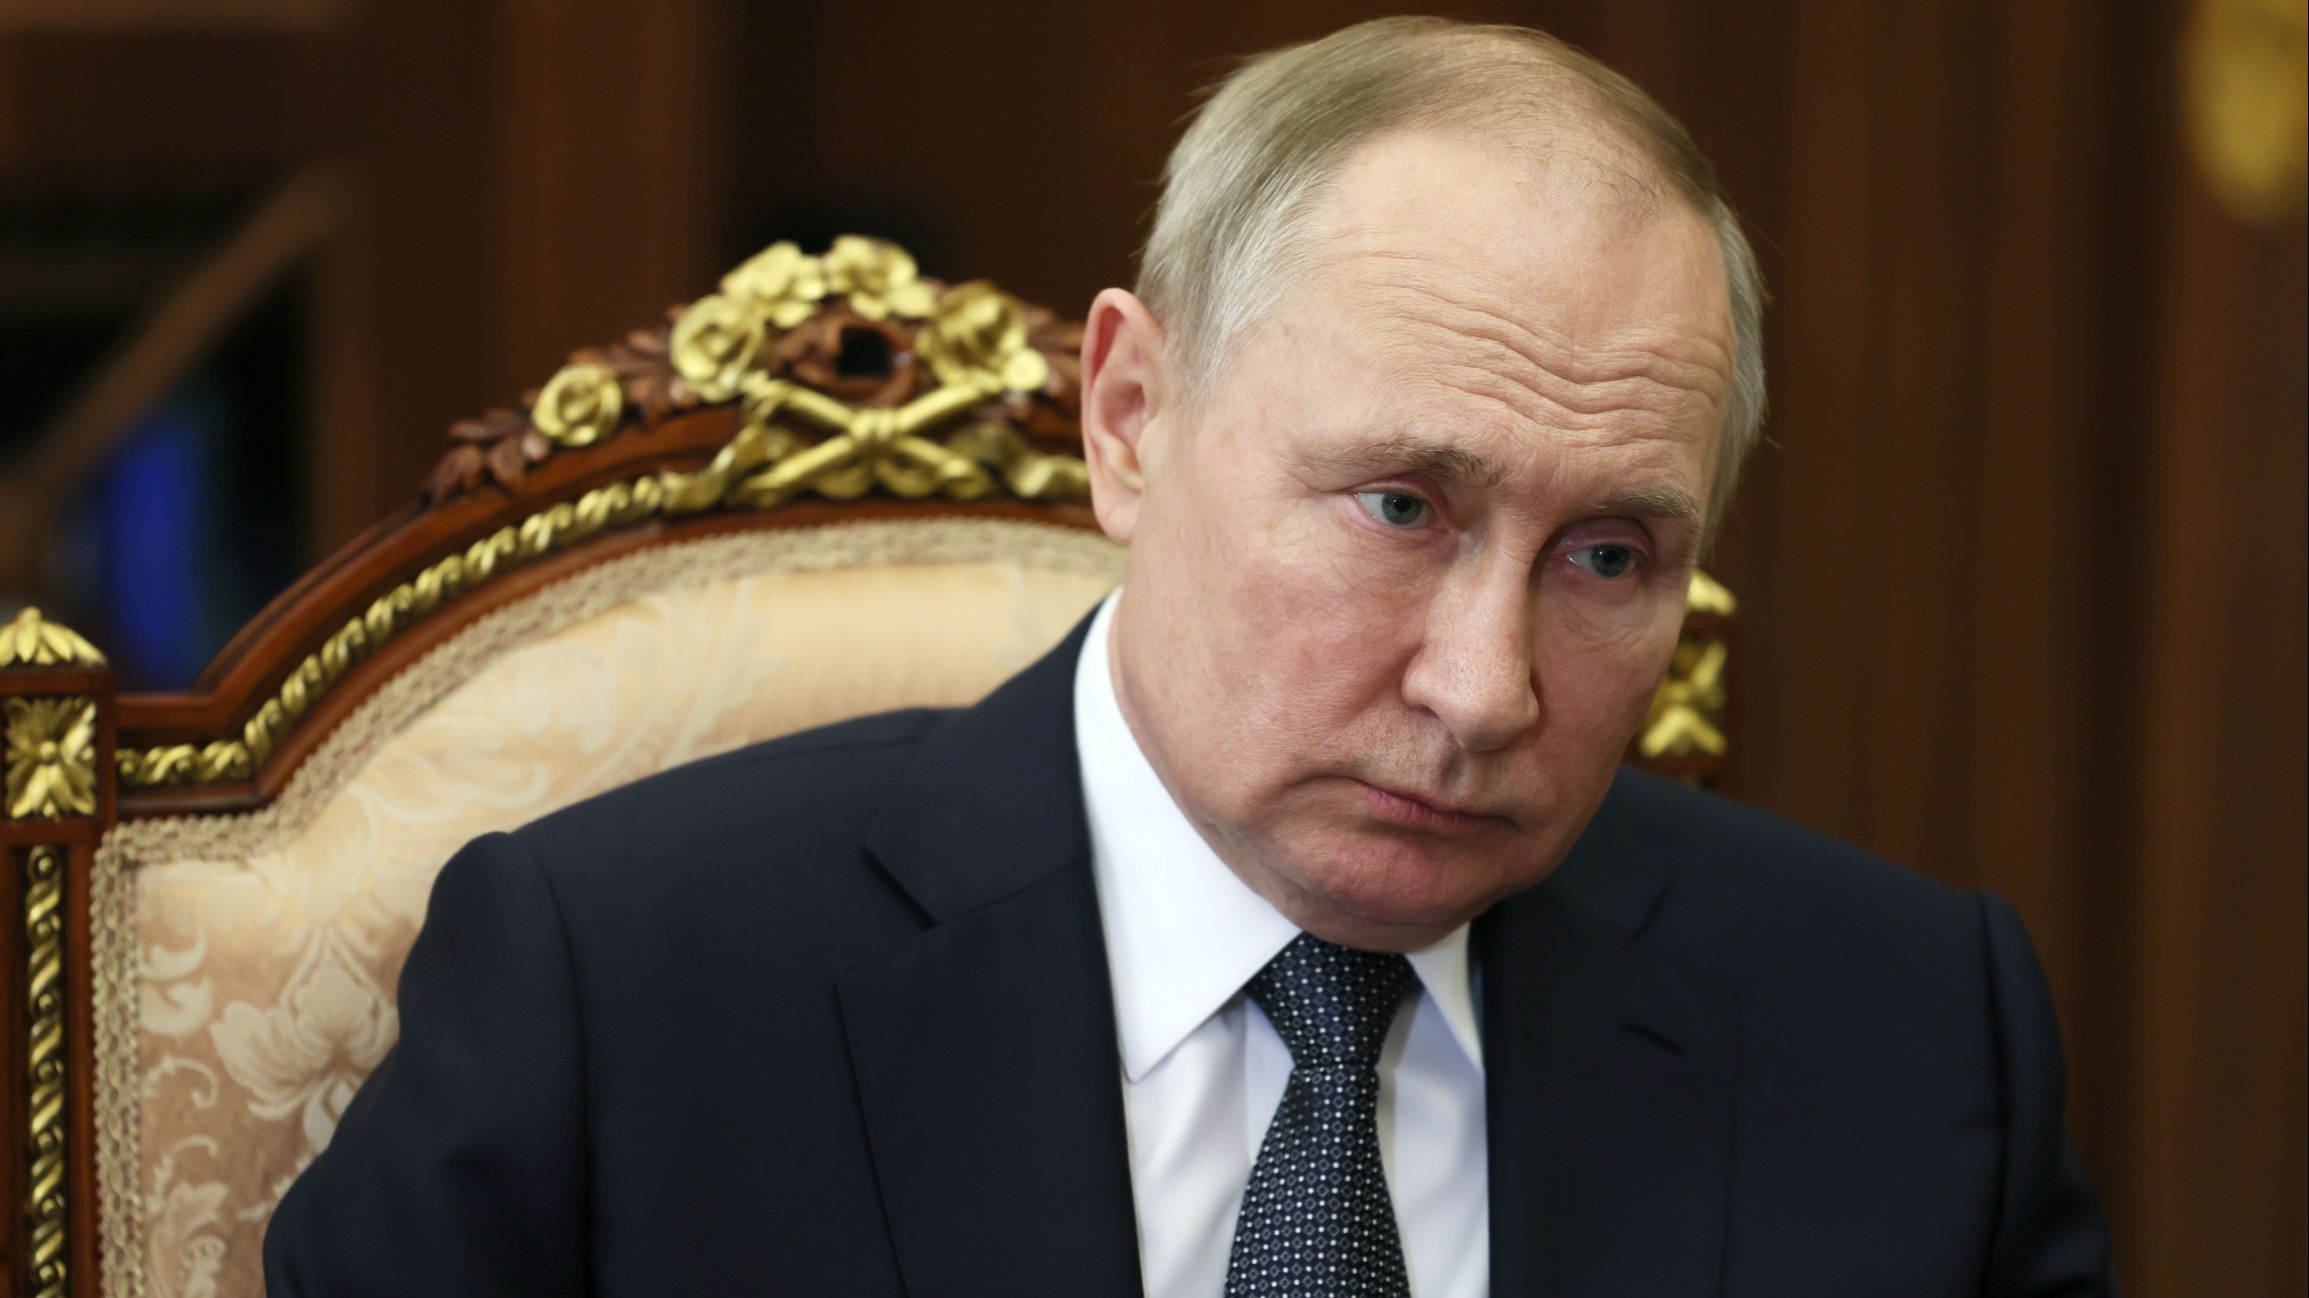 Ουκρανία: Ο Πούτιν θα πεθάνει σύντομα λένε οι μυστικές υπηρεσίες